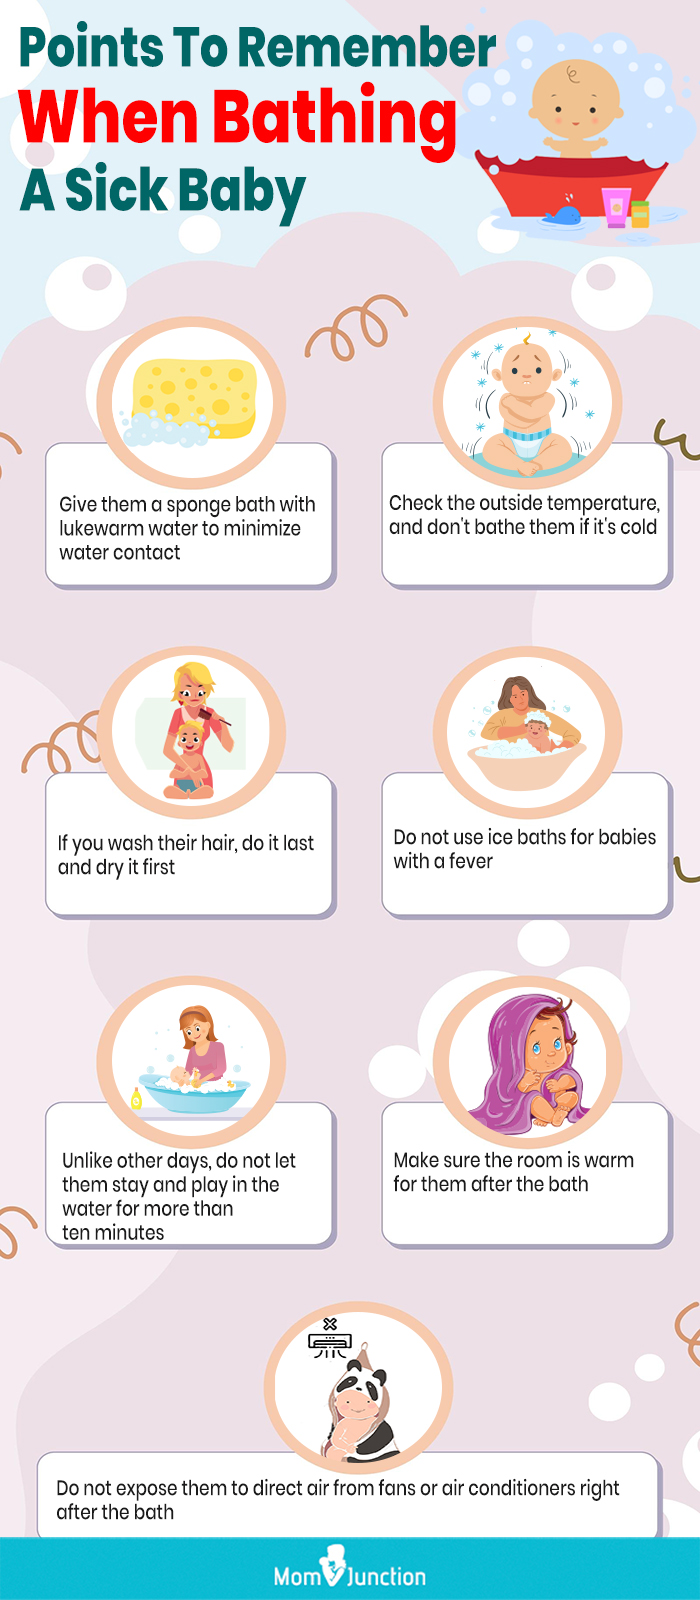 给生病的婴儿洗澡时要记住的要点(信息图)